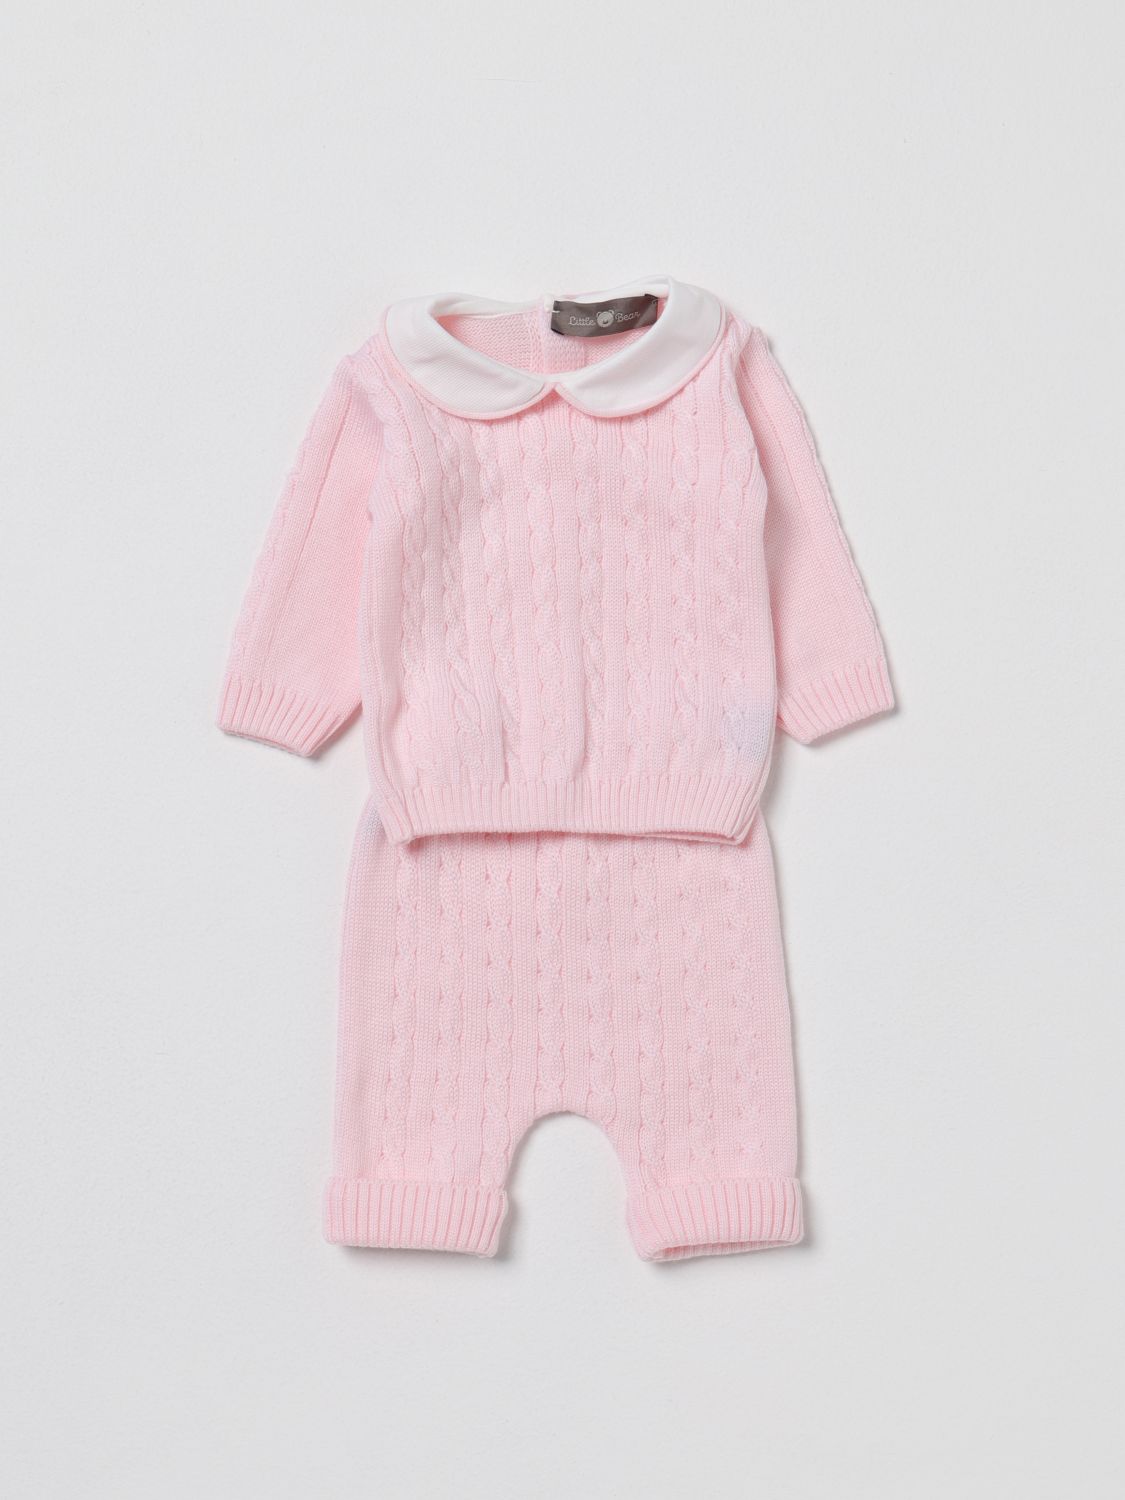 Little Bear Babies' Romper  Kids In Blush Pink